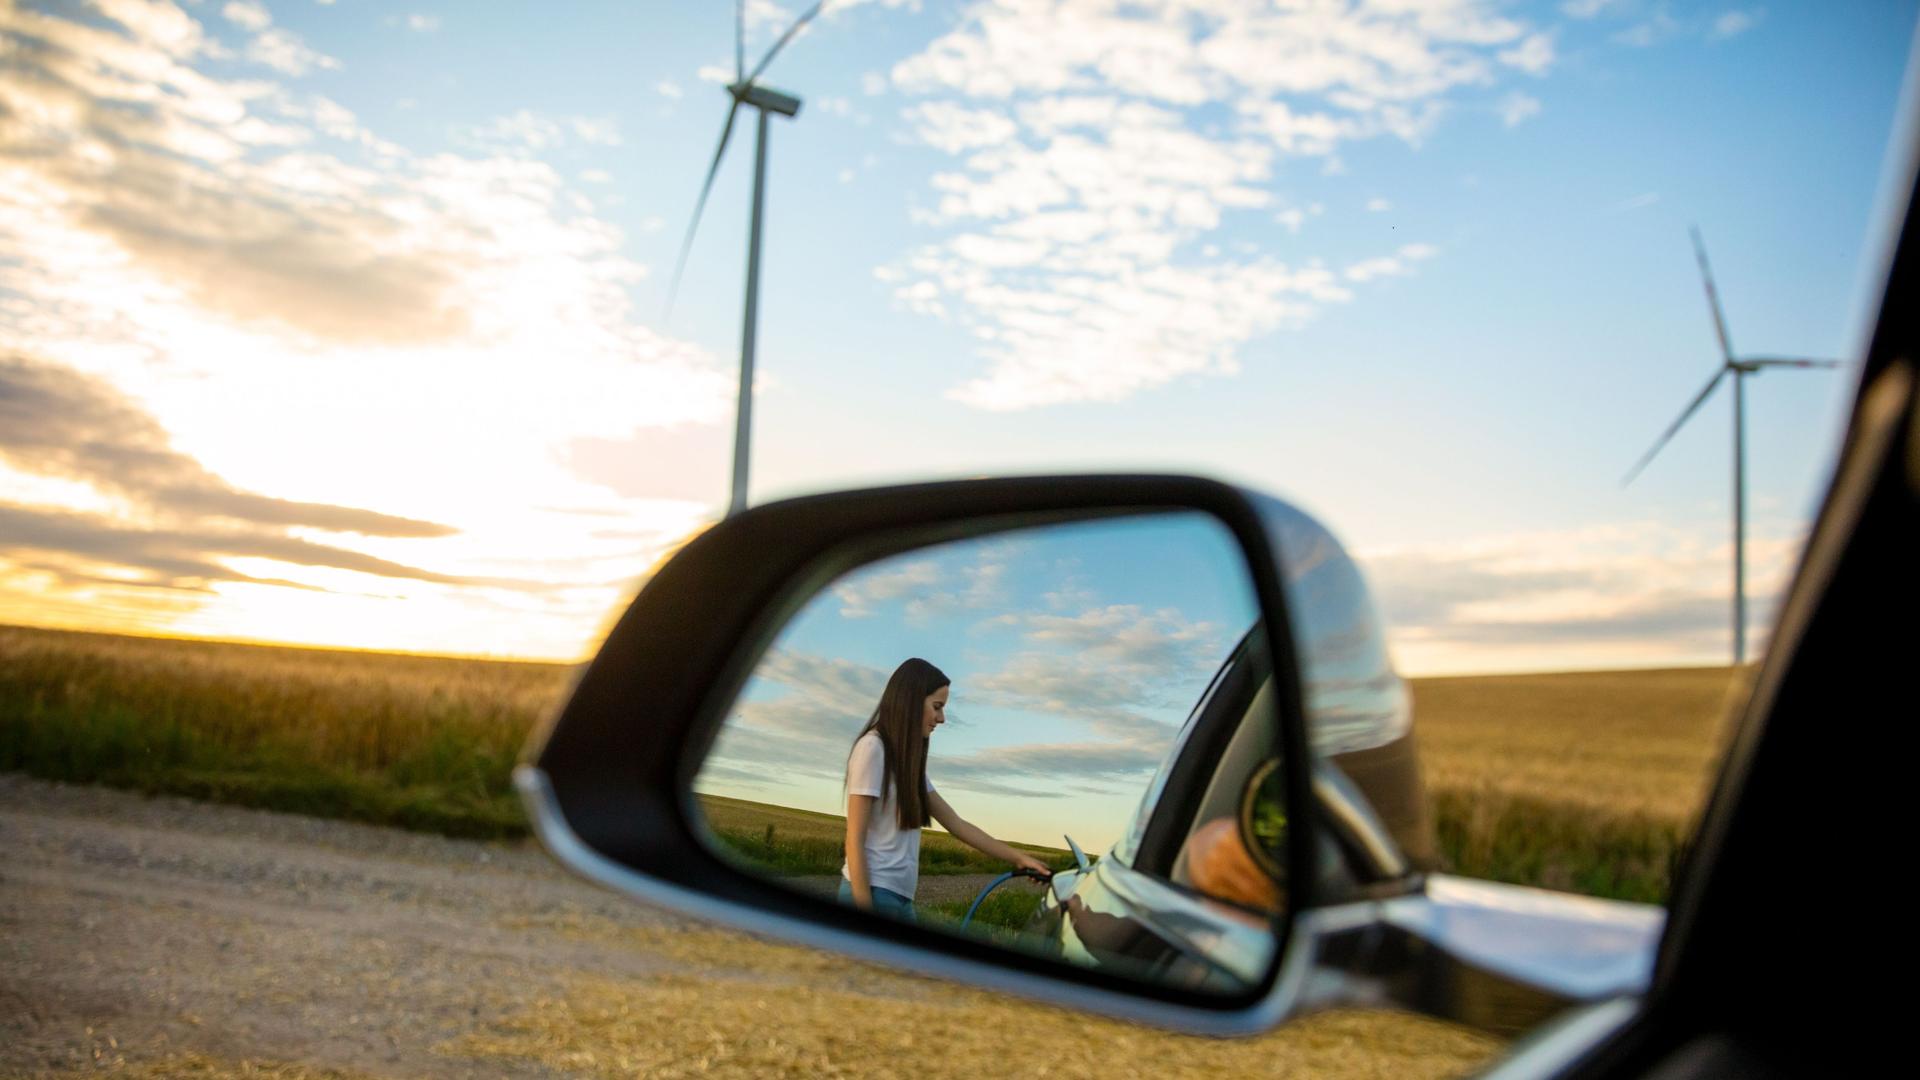 Eine Reflexion im Rückspiegel eines Autos. Darin eine Frau, die ein Elektroauto betankt.